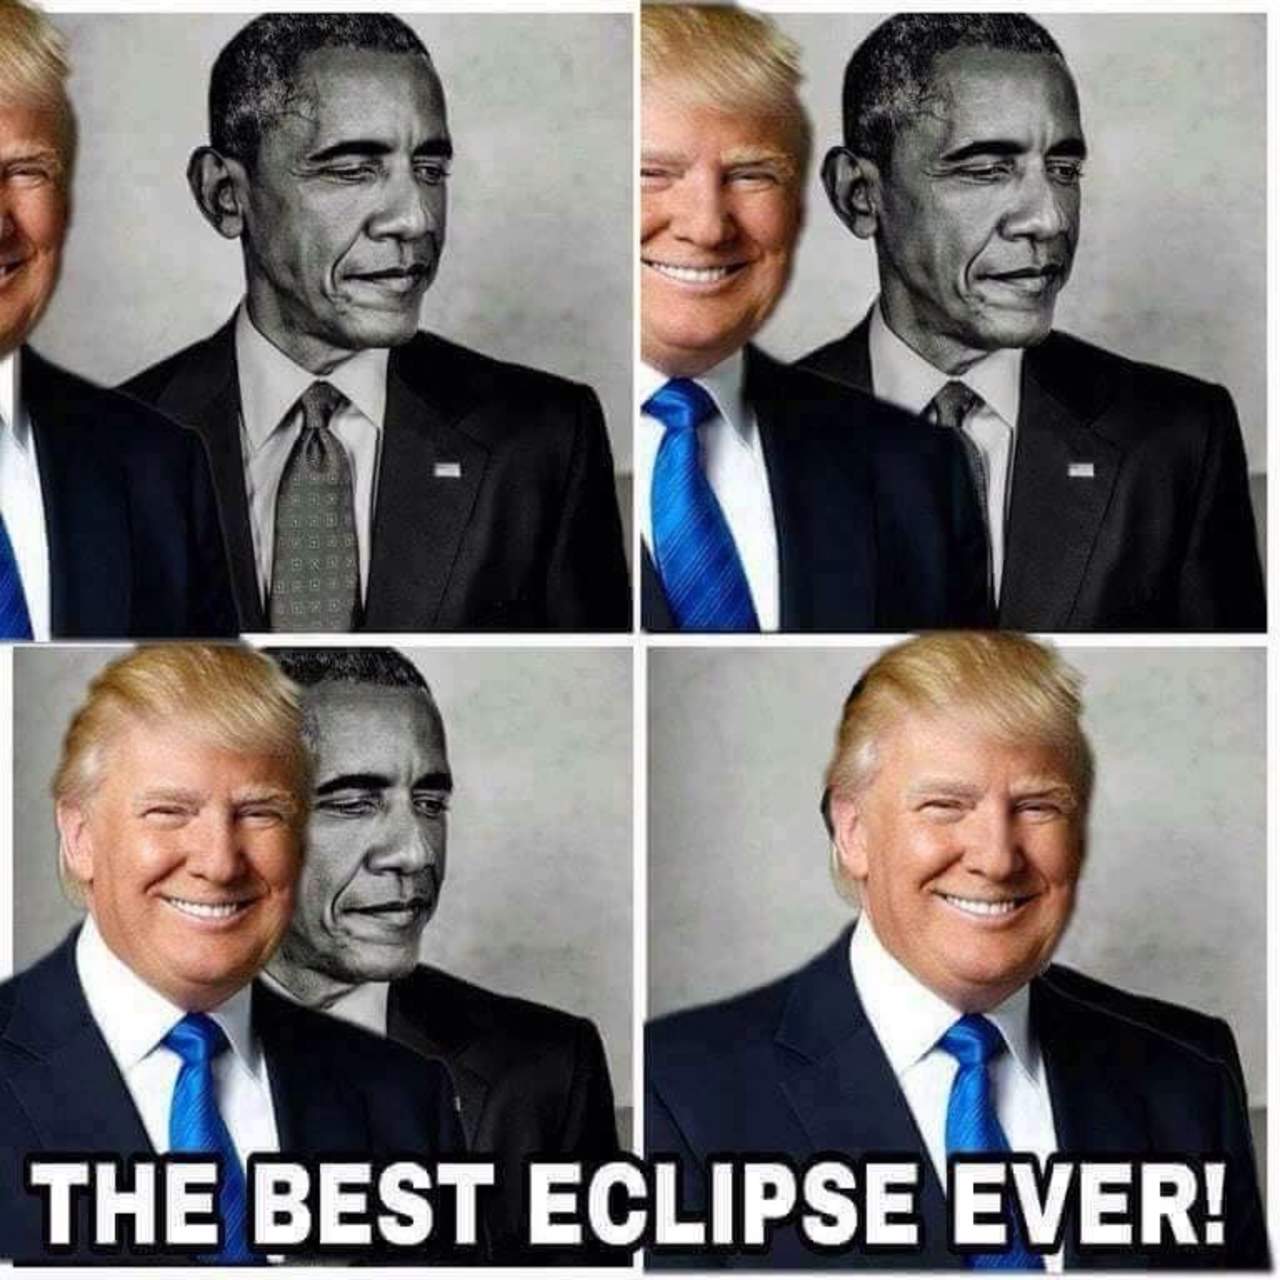 Trump compartió el montaje después de observar el pasado lunes el eclipse solar total, que cruzó el país de costa a costa, desde uno de los balcones de la Casa Blanca, y que admiró por unos segundos sin gafas protectoras, lo que le valió críticas. (TWITTER)